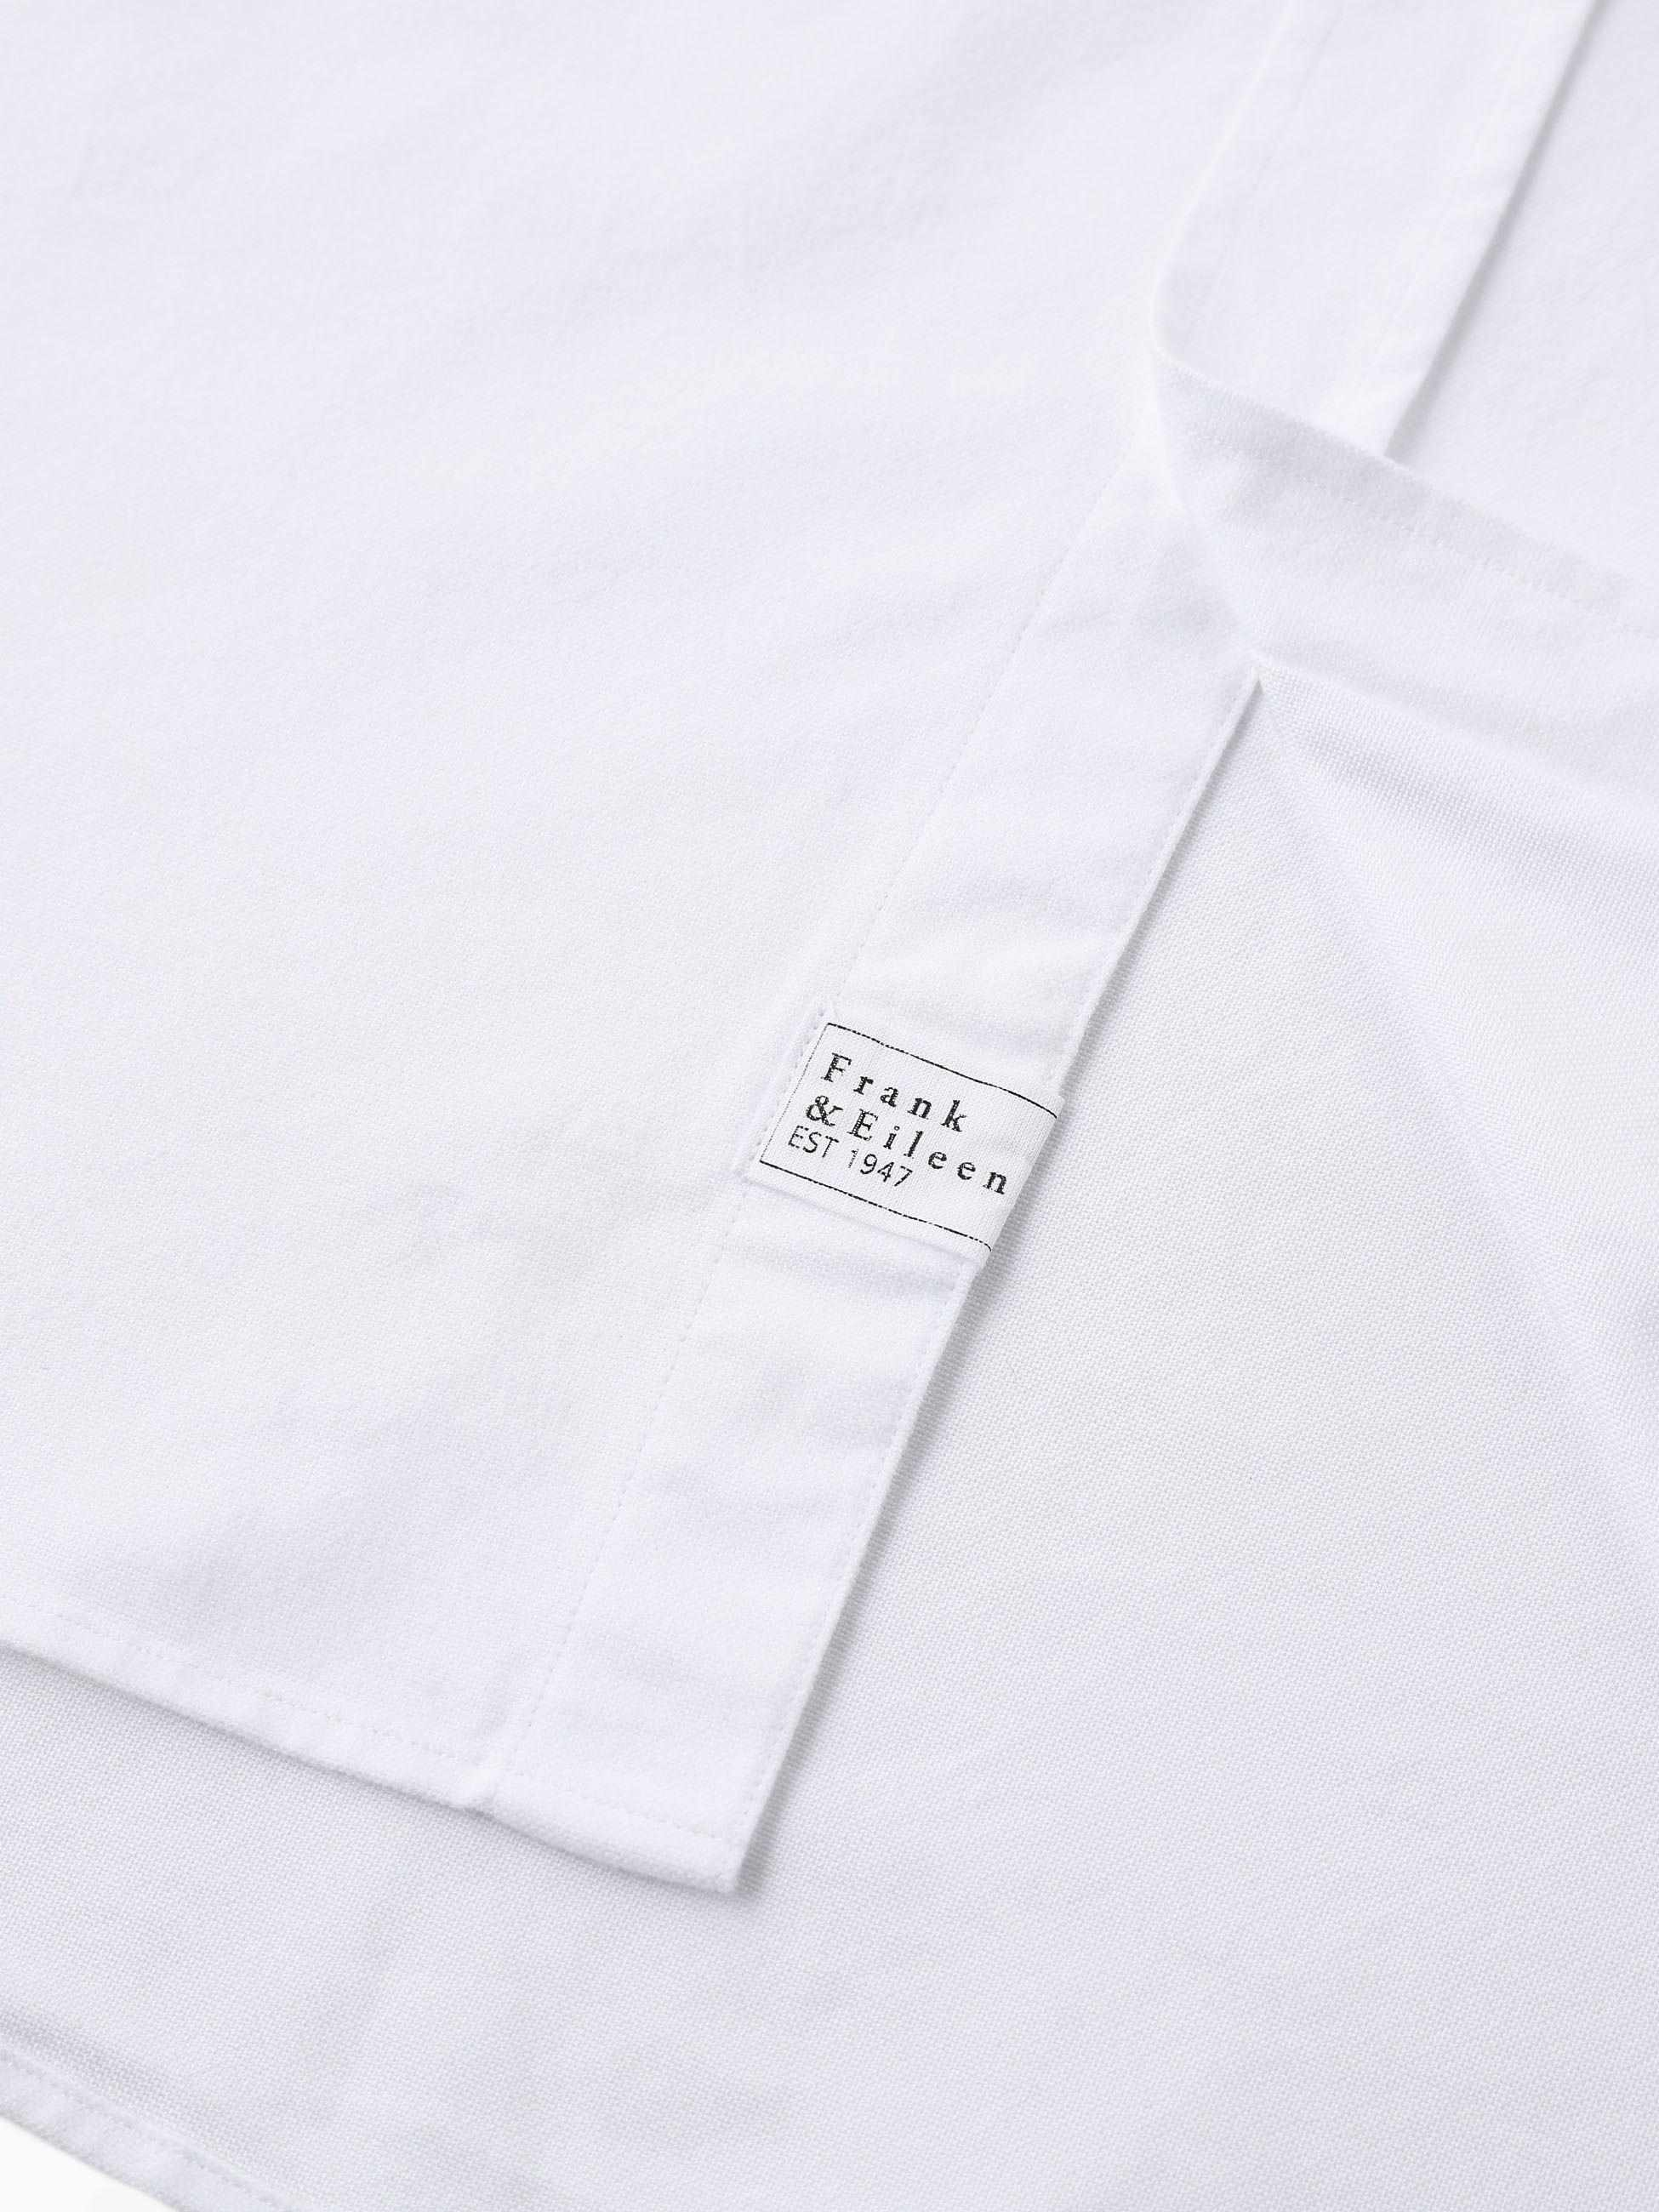 Eileen Cotton Shirt (white) 詳細画像 white 3